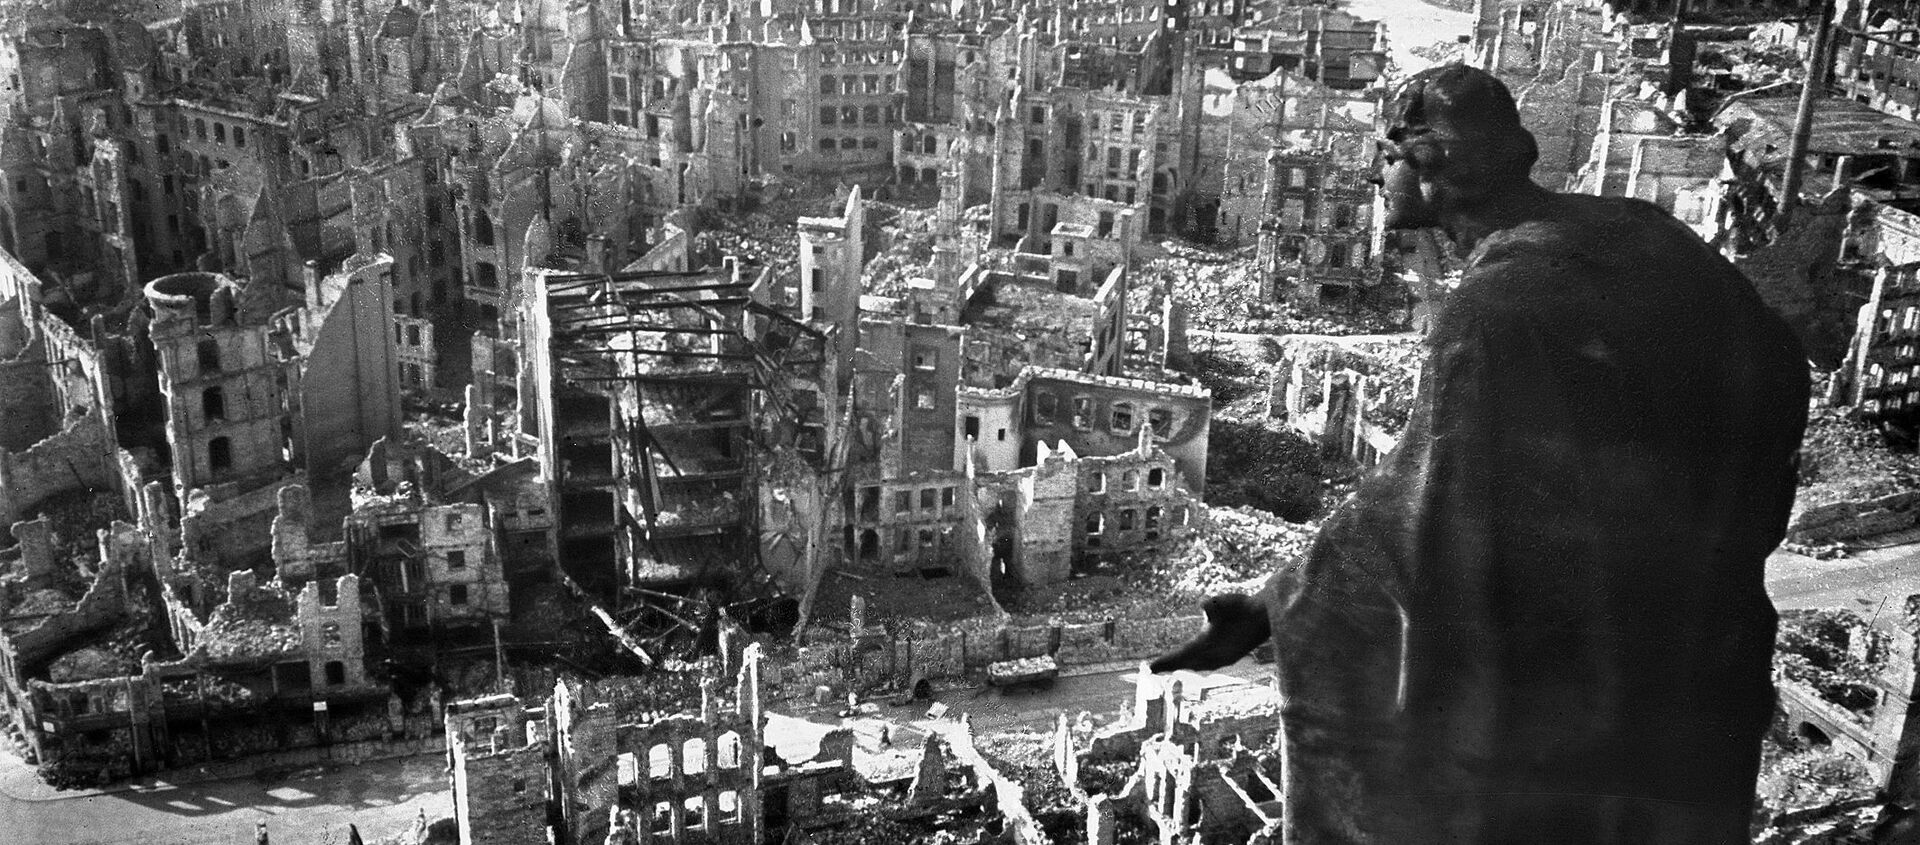 Ruševine Drezdena nakon vazdušnog napada 13. februara 1945. - Sputnik Srbija, 1920, 14.02.2020